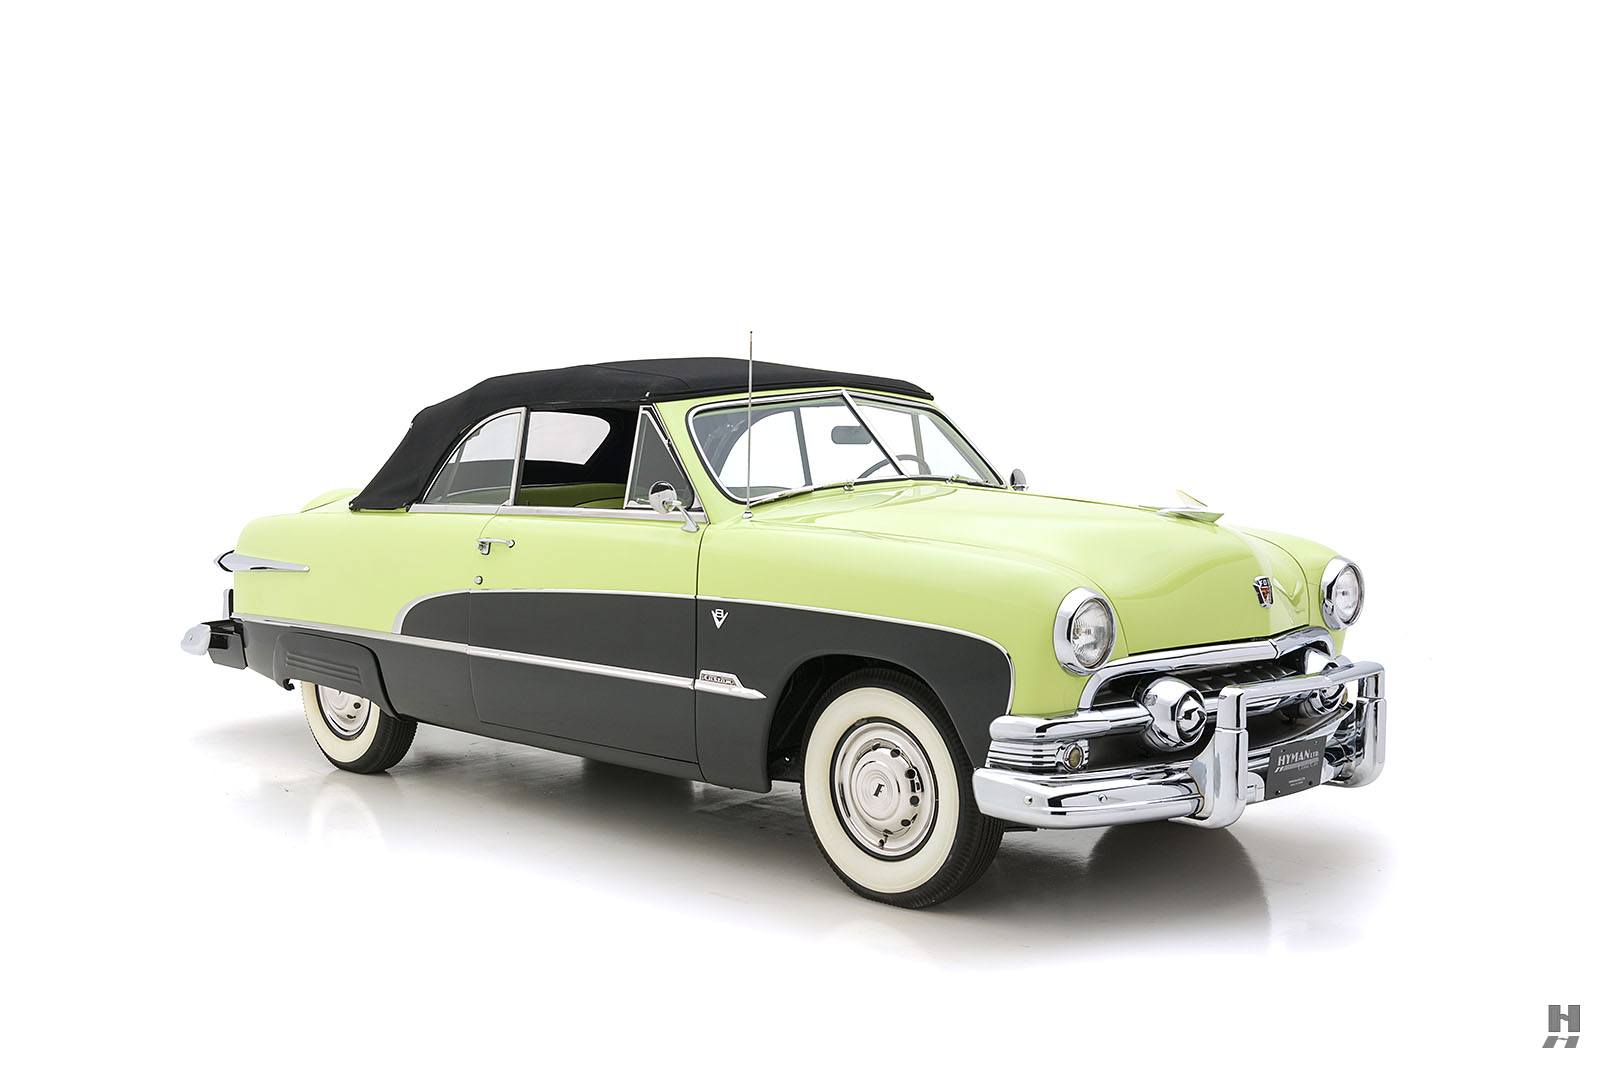 1951 ford custom deluxe